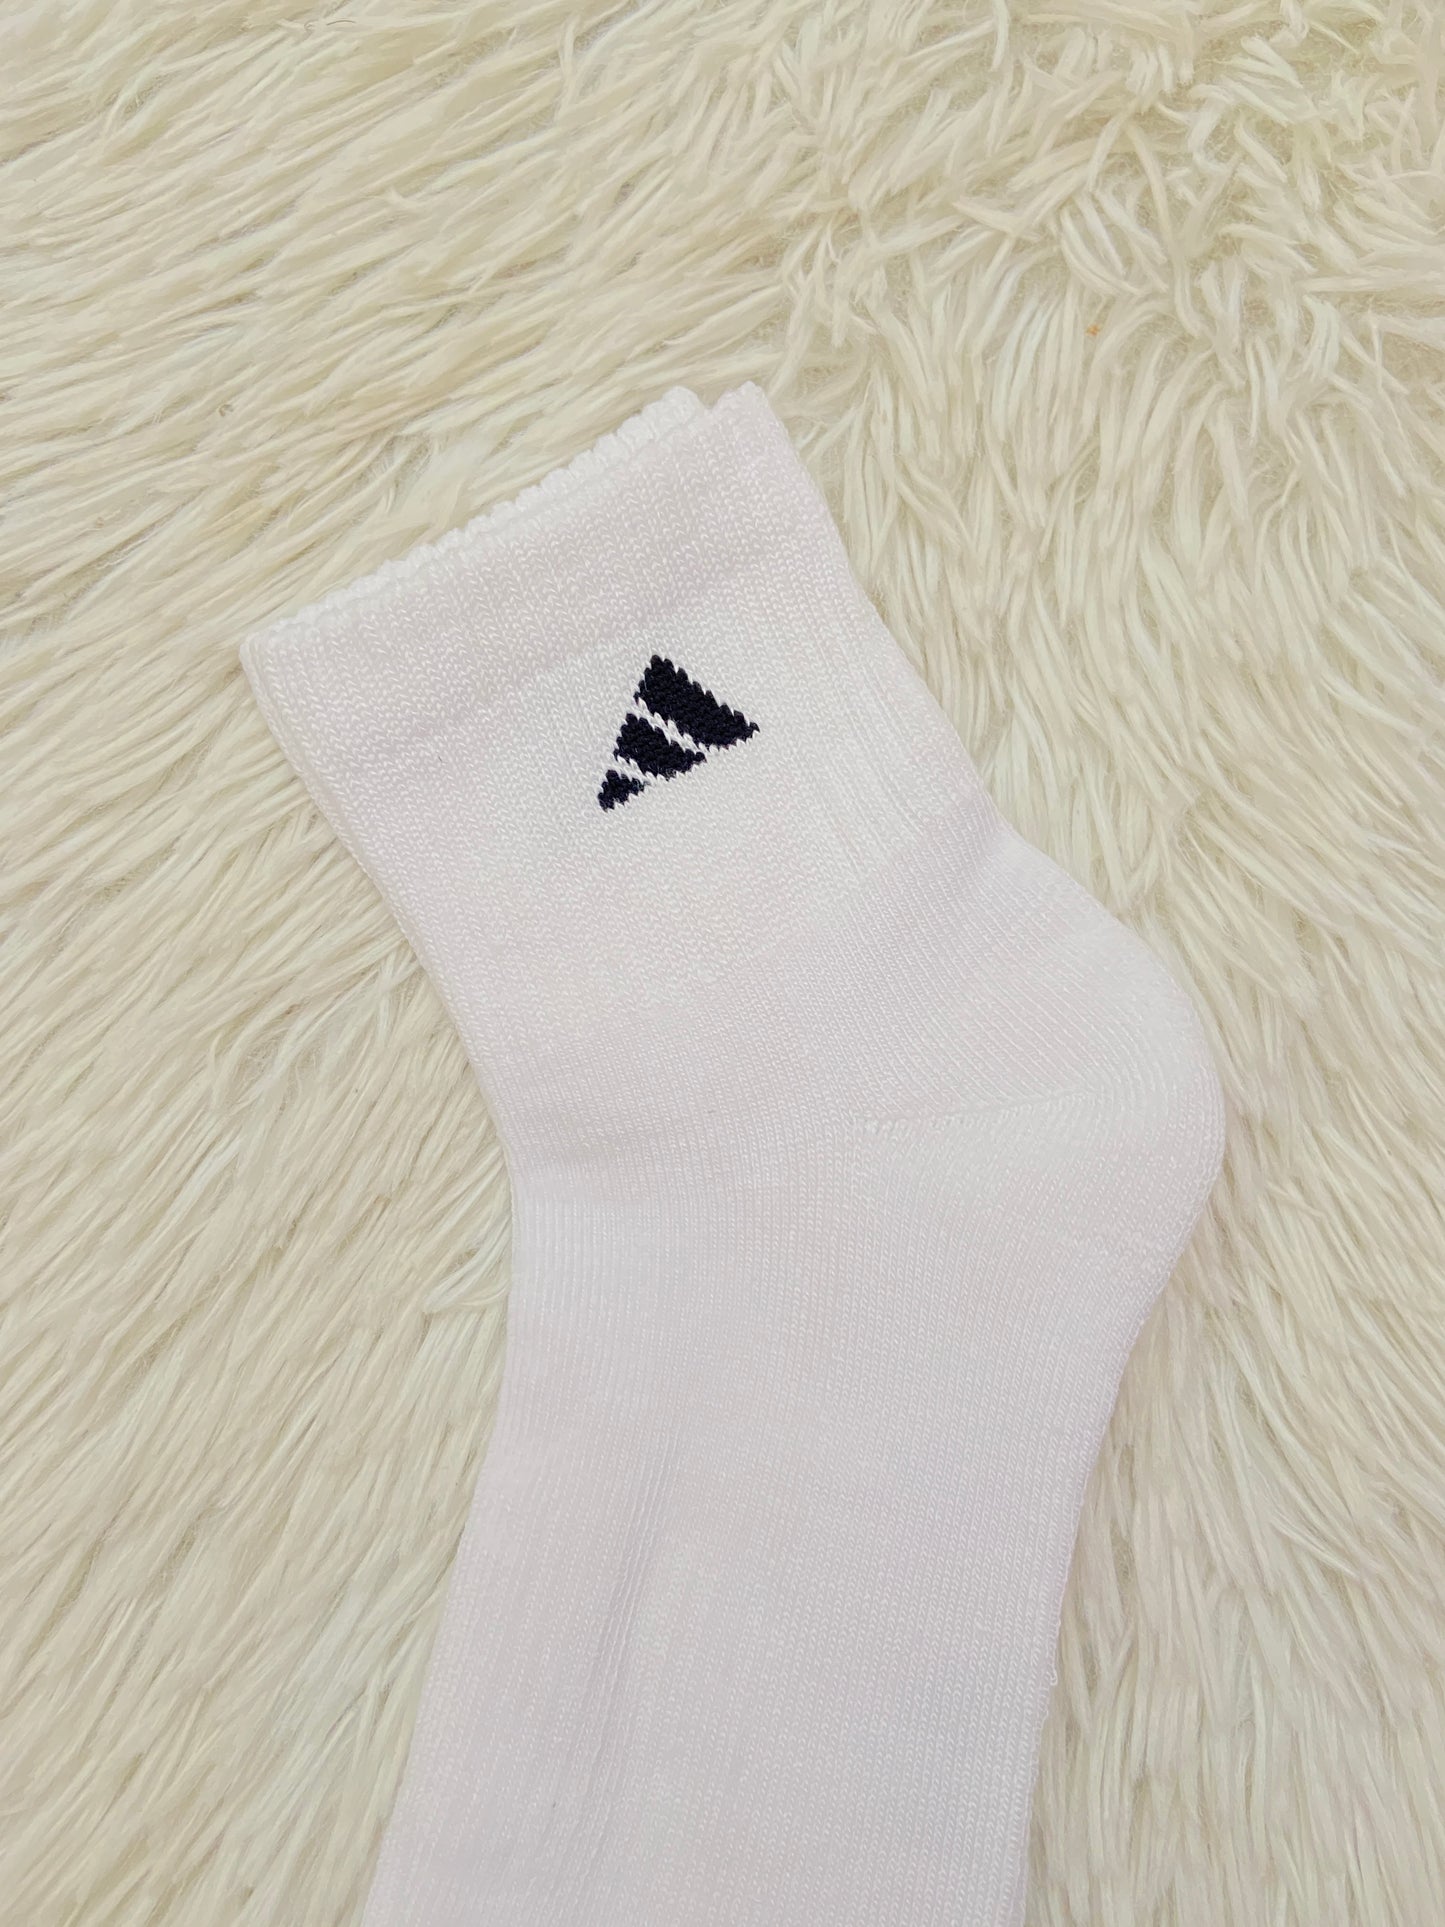 Medias Adidas original blanca con logotipo de la marca arriba en negro.